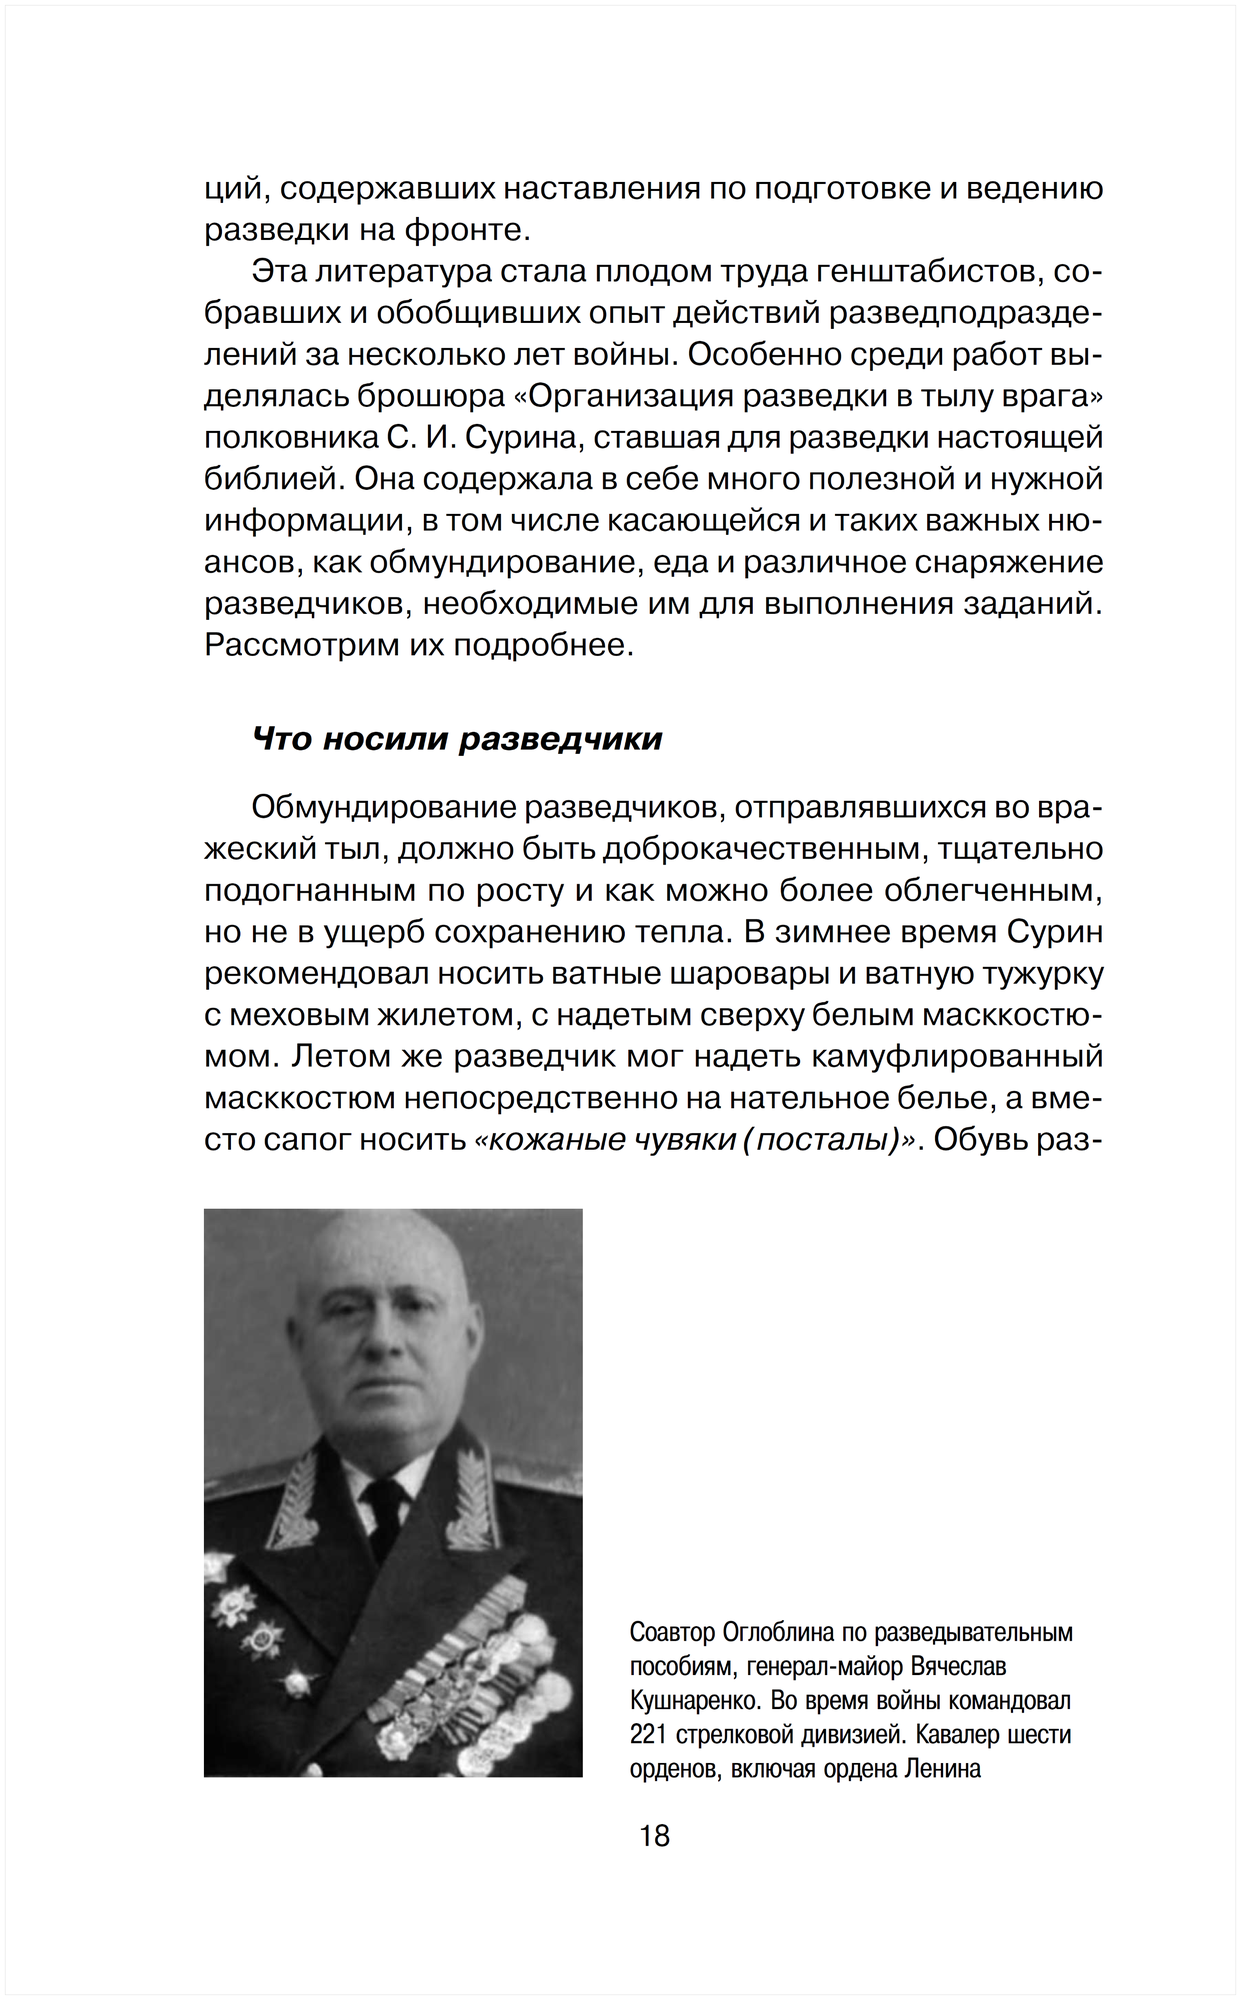 Войсковая разведка Красной Армии и вермахта - фото №9